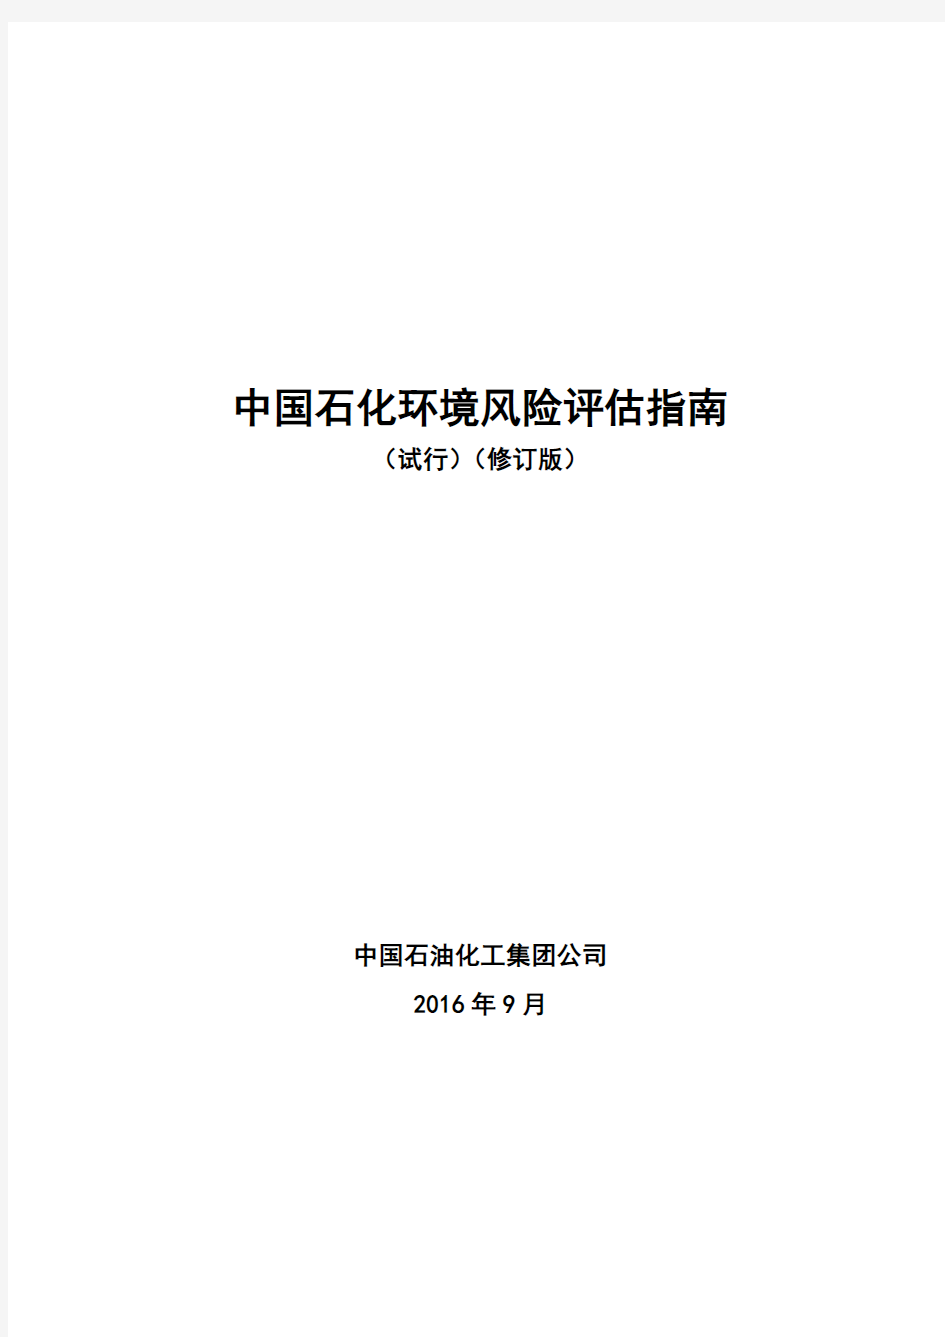 中国石化环境风险评估指南(试行)(修订版)